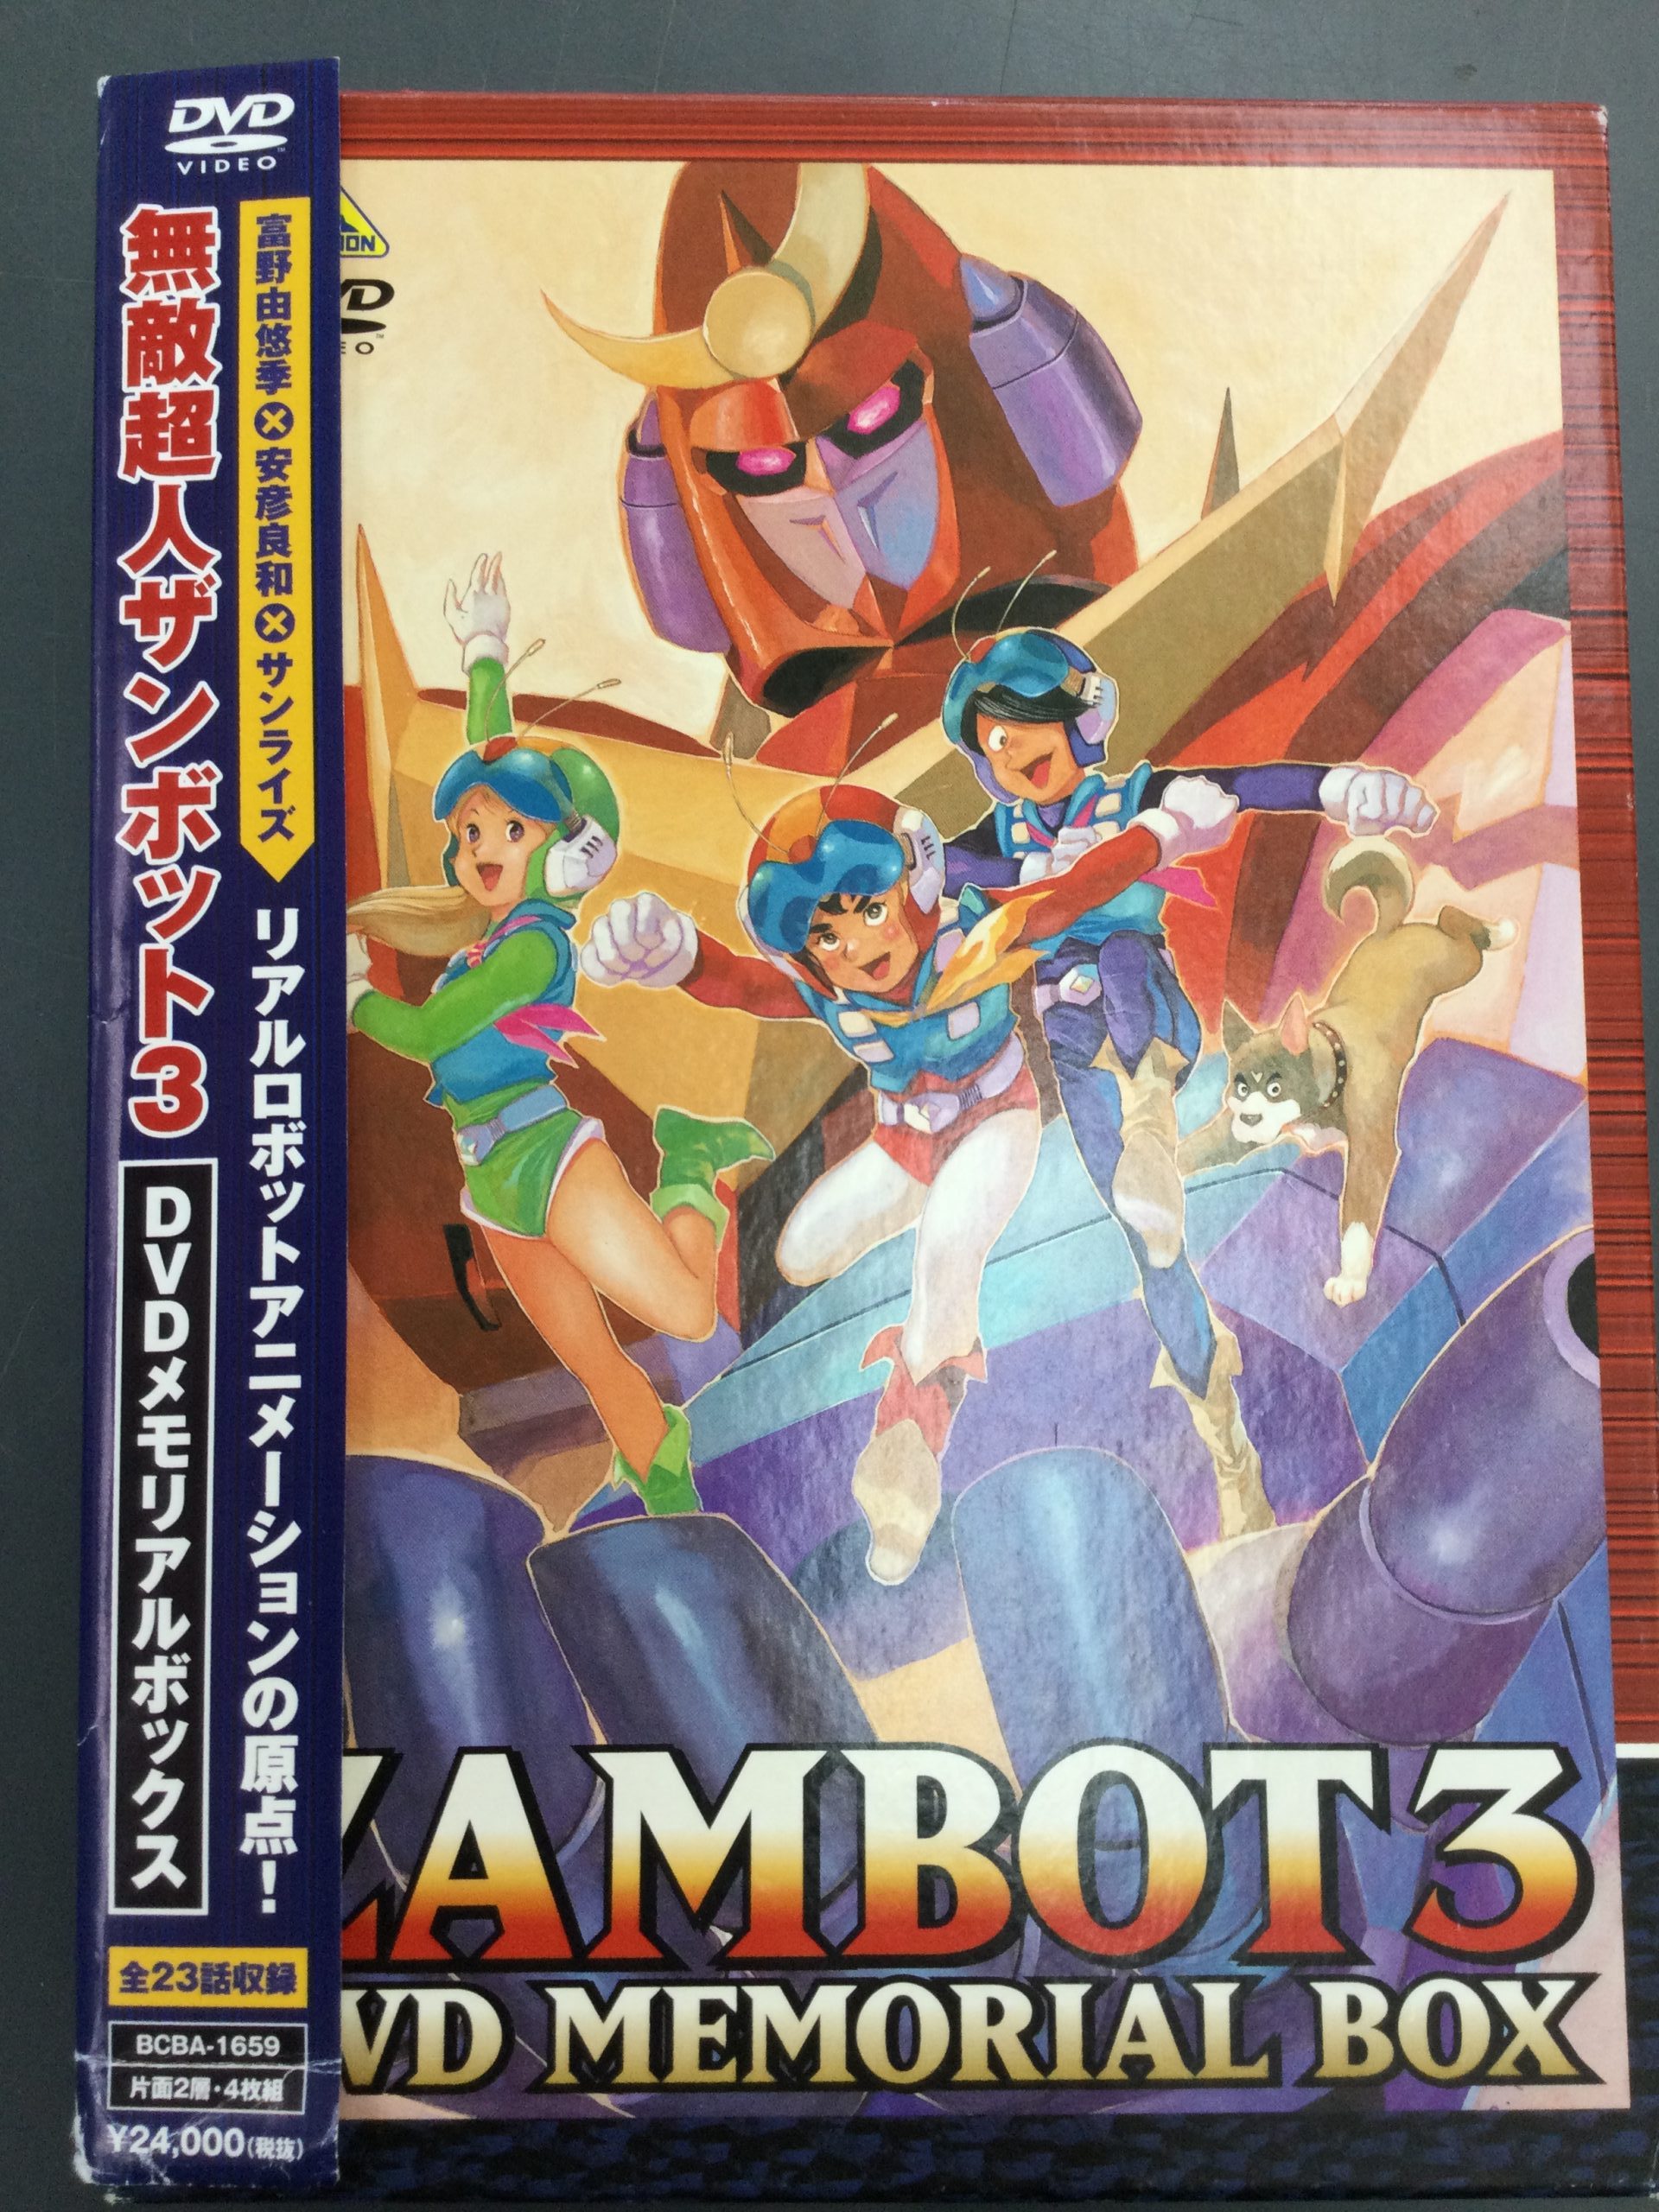 無敵超人ザンボット3 DVDボックス - アニメ